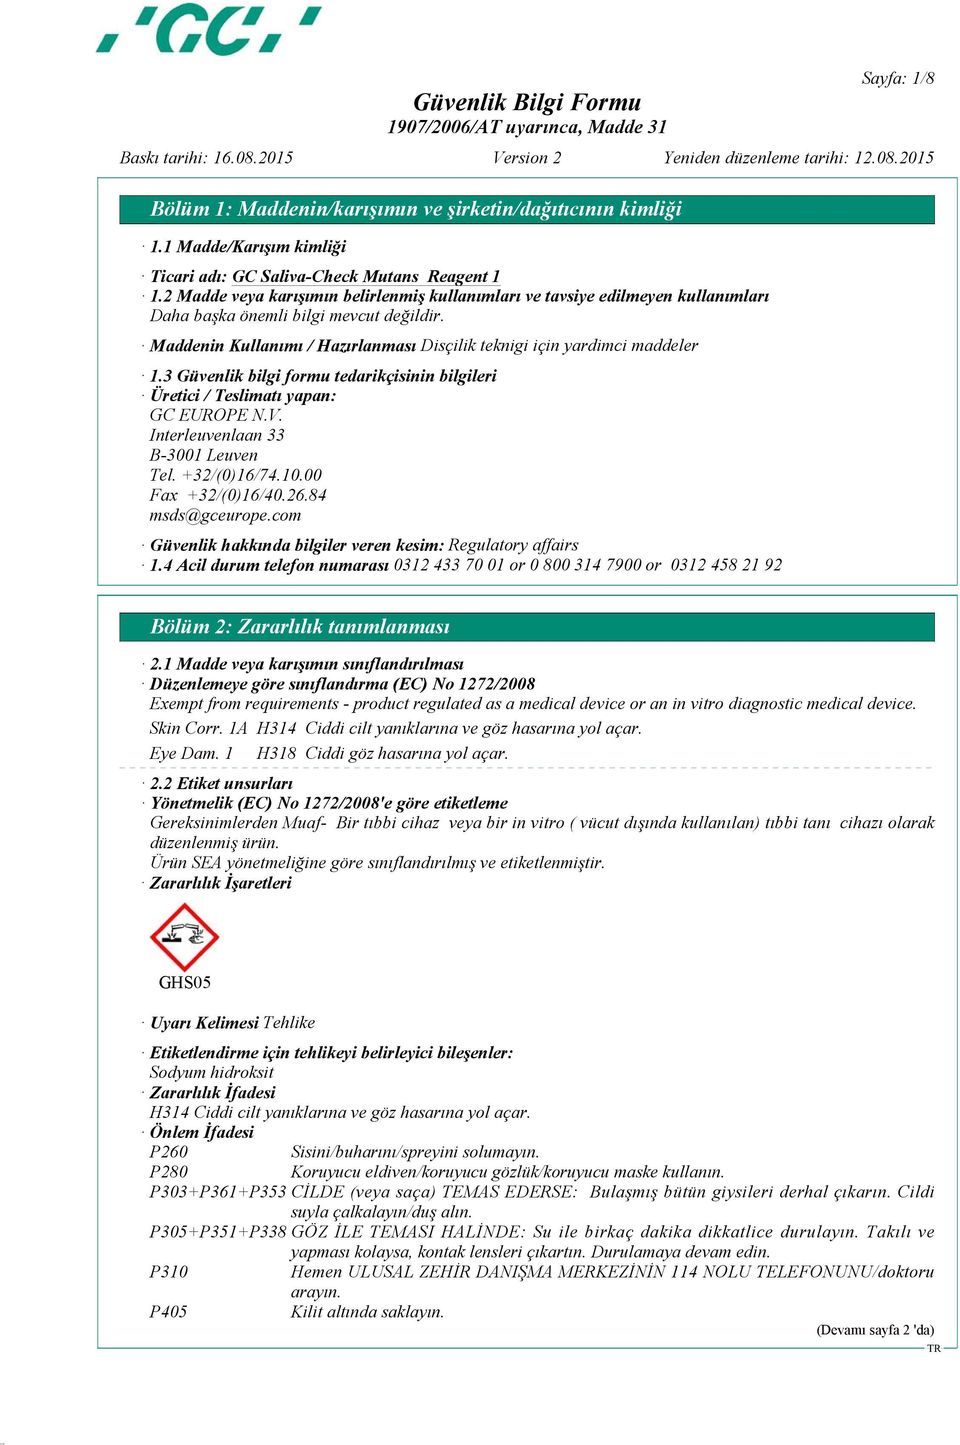 3 Güvenlik bilgi formu tedarikçisinin bilgileri Üretici / Teslimatı yapan: GC EUROPE N.V. Interleuvenlaan 33 B-3001 Leuven Tel. +32/(0)16/74.10.00 Fax +32/(0)16/40.26.84 msds@gceurope.